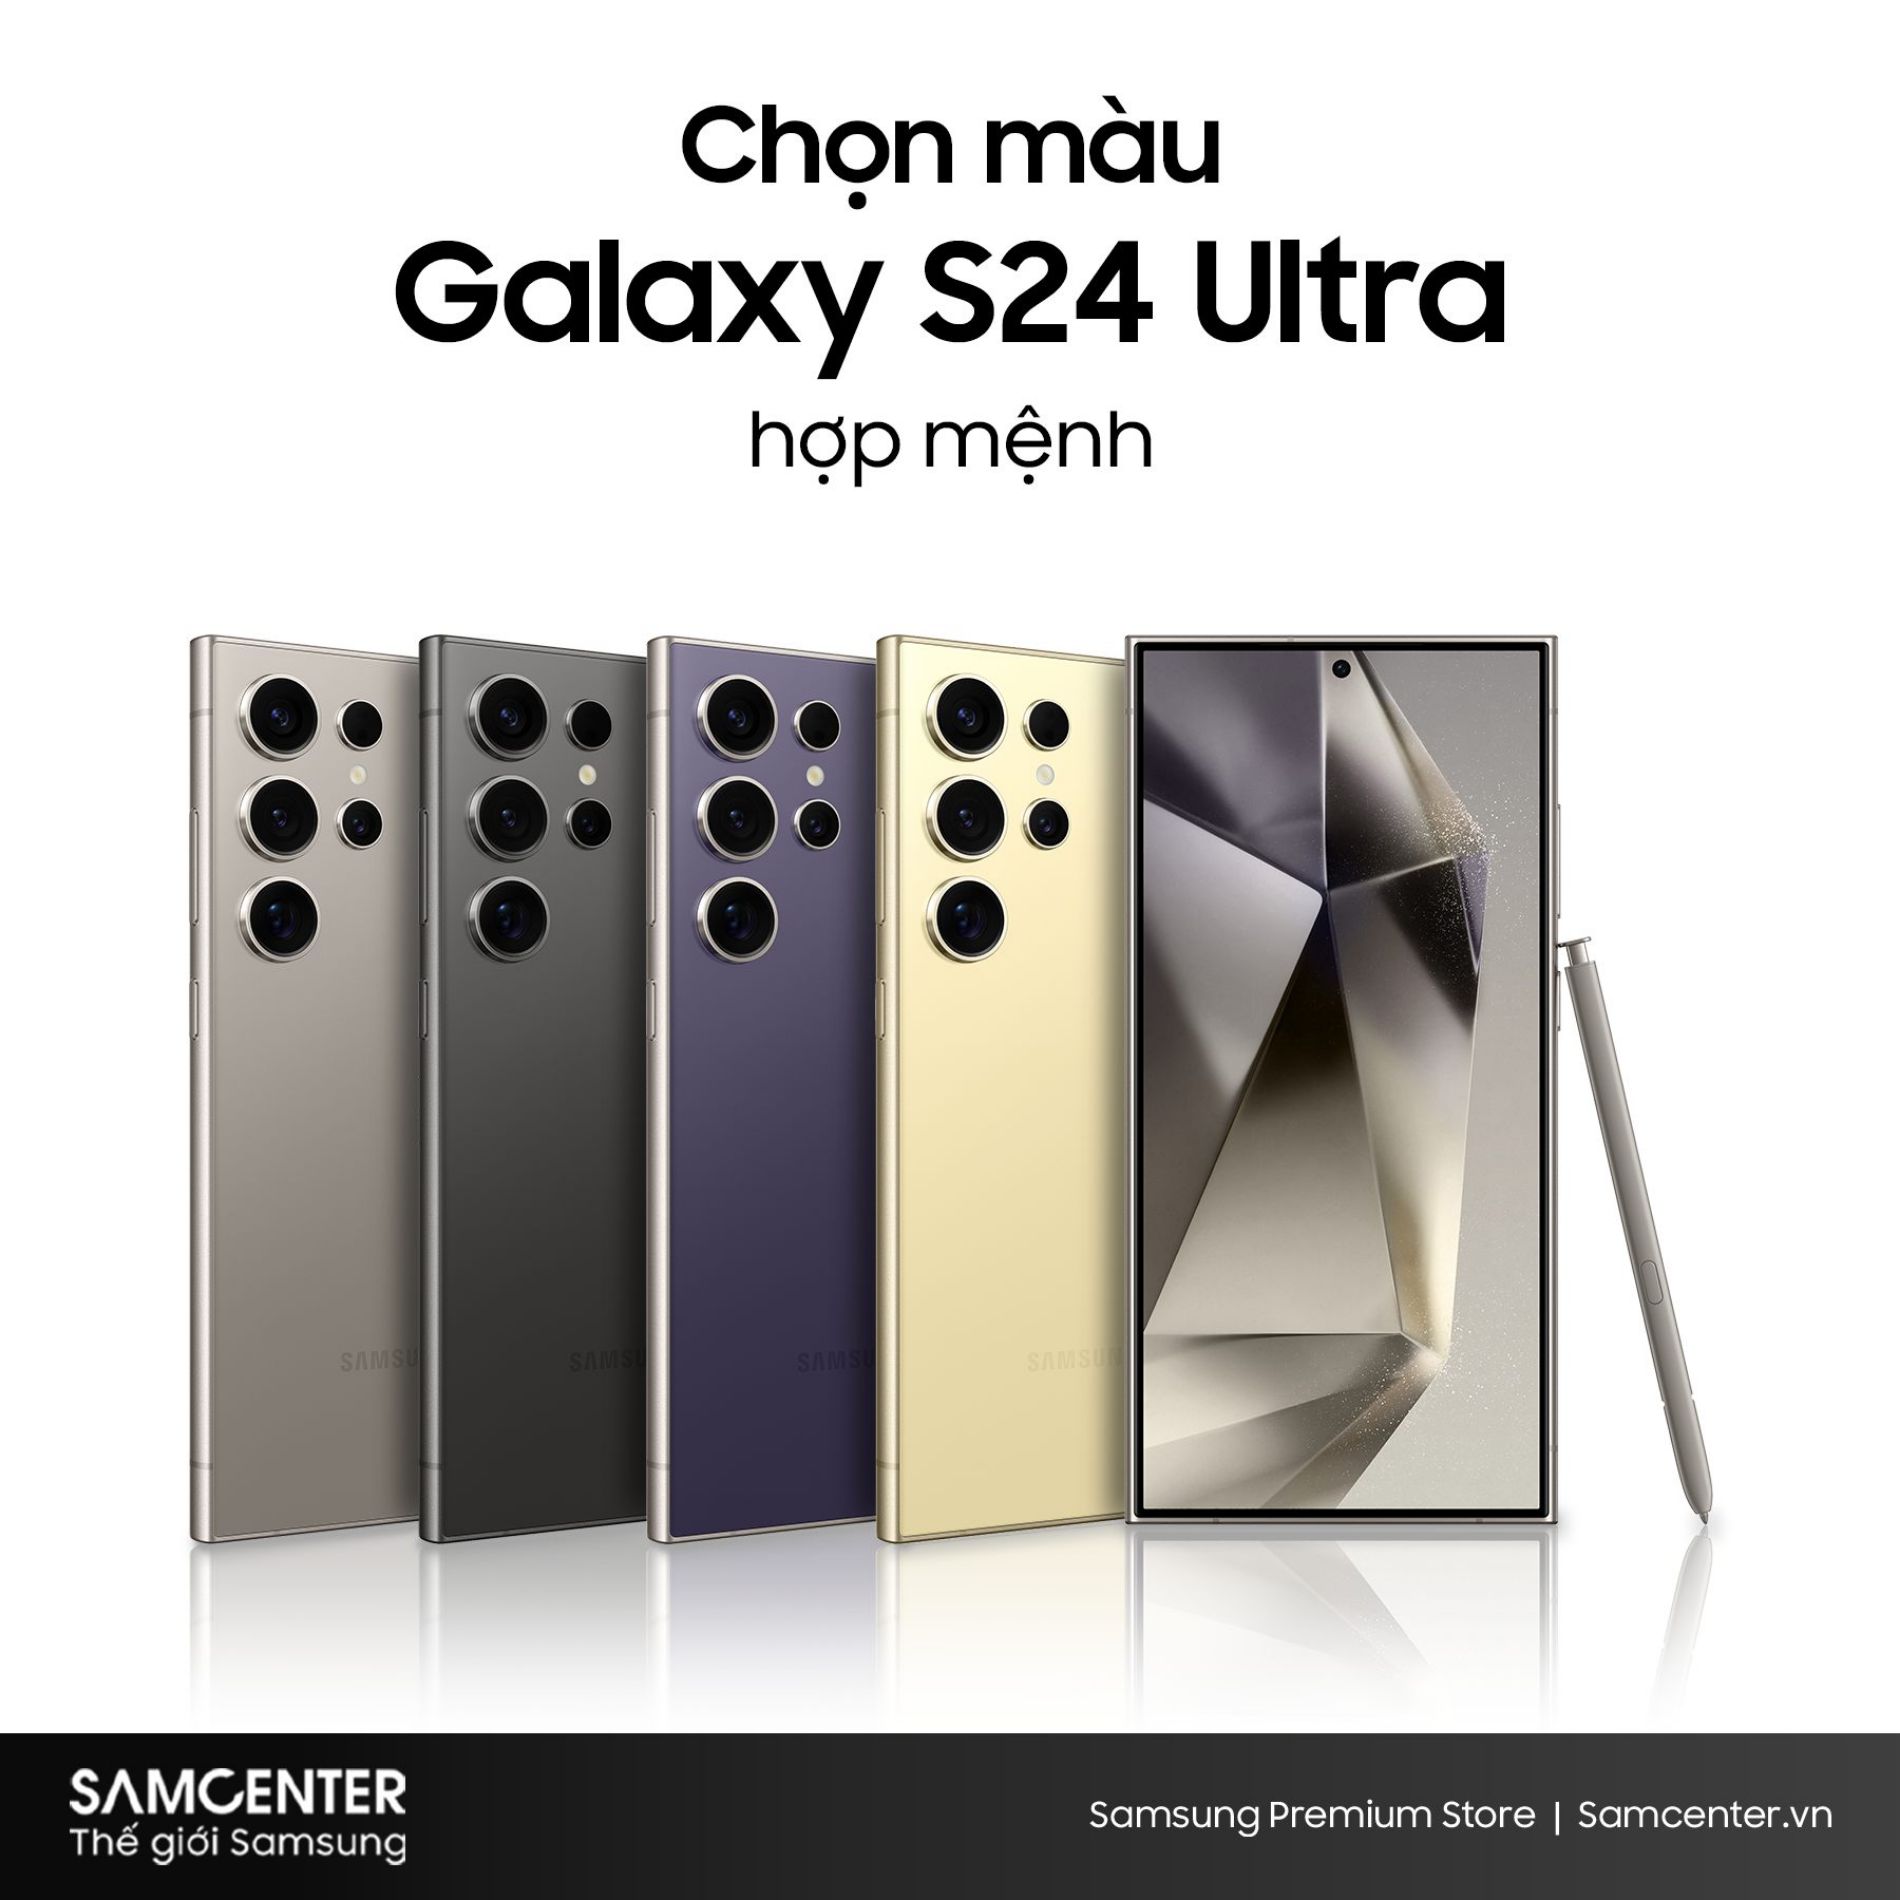 Hình ảnh cho danh mục Chọn Samsung S24 Ultra màu nào để hợp mệnh theo phong thủy?